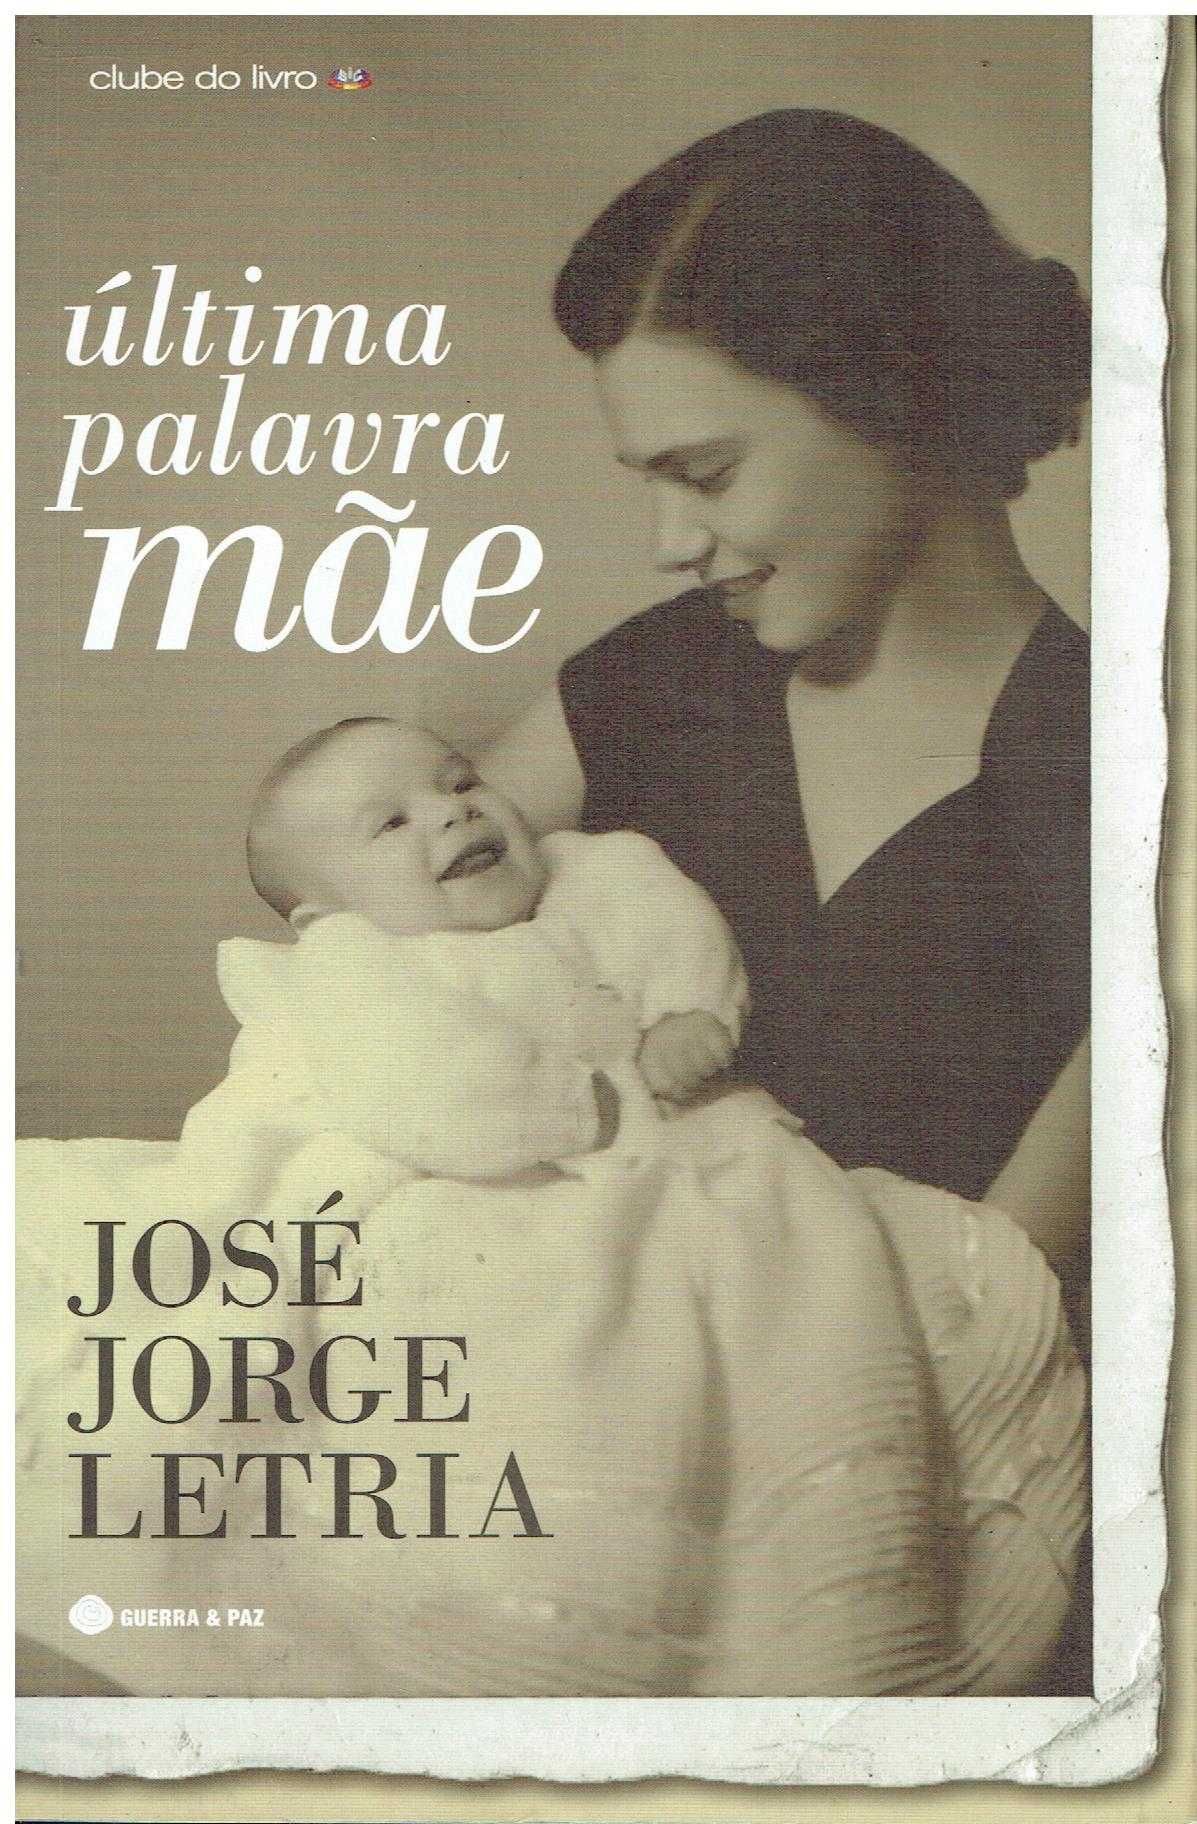 7278

Última Palavra: Mãe
de José Jorge Letria